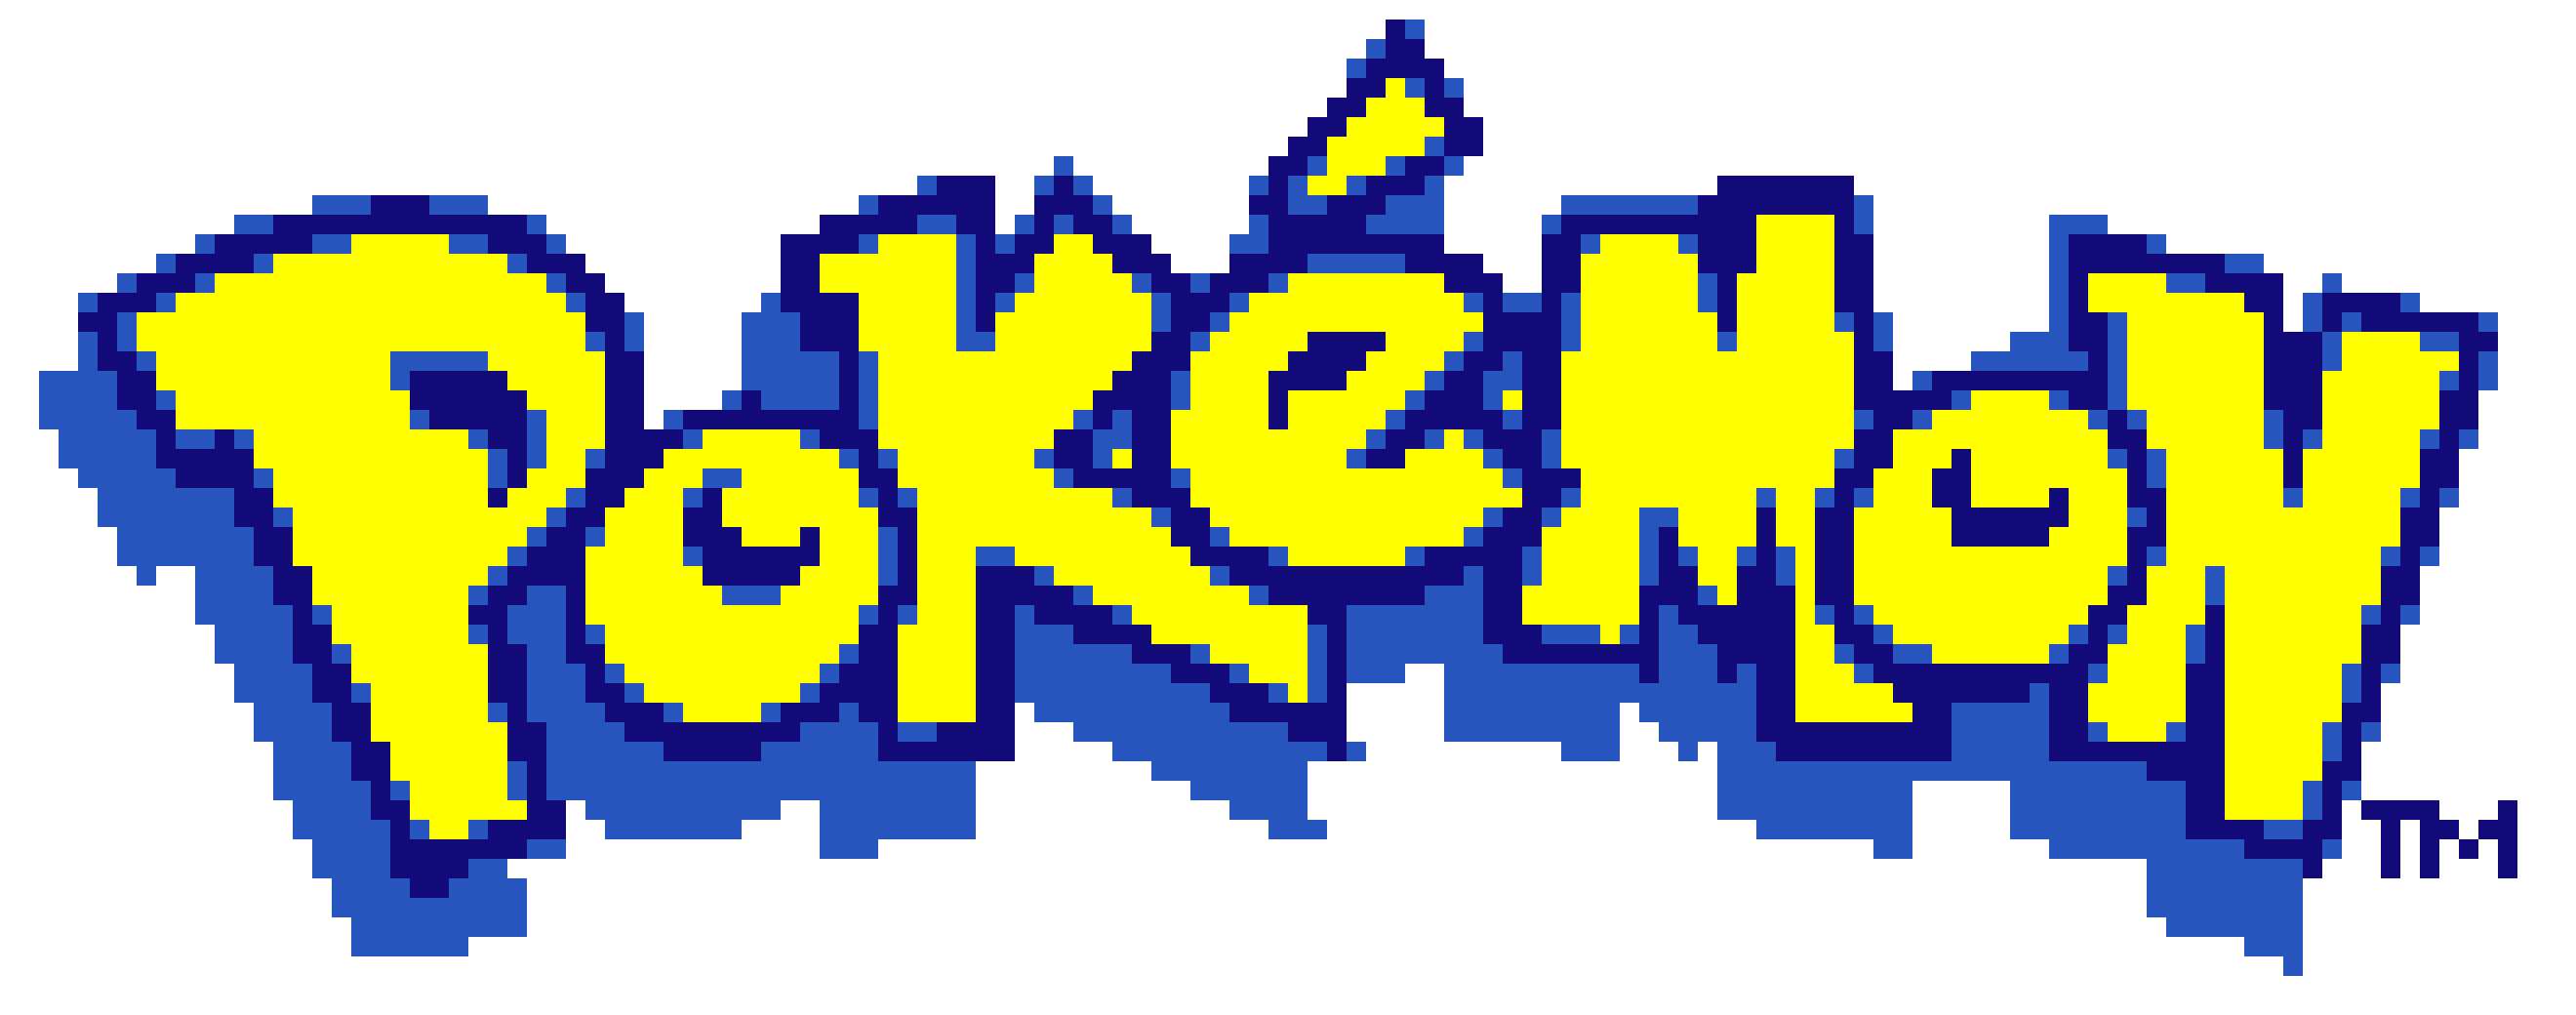 Pokemon Logo PNG - 178812